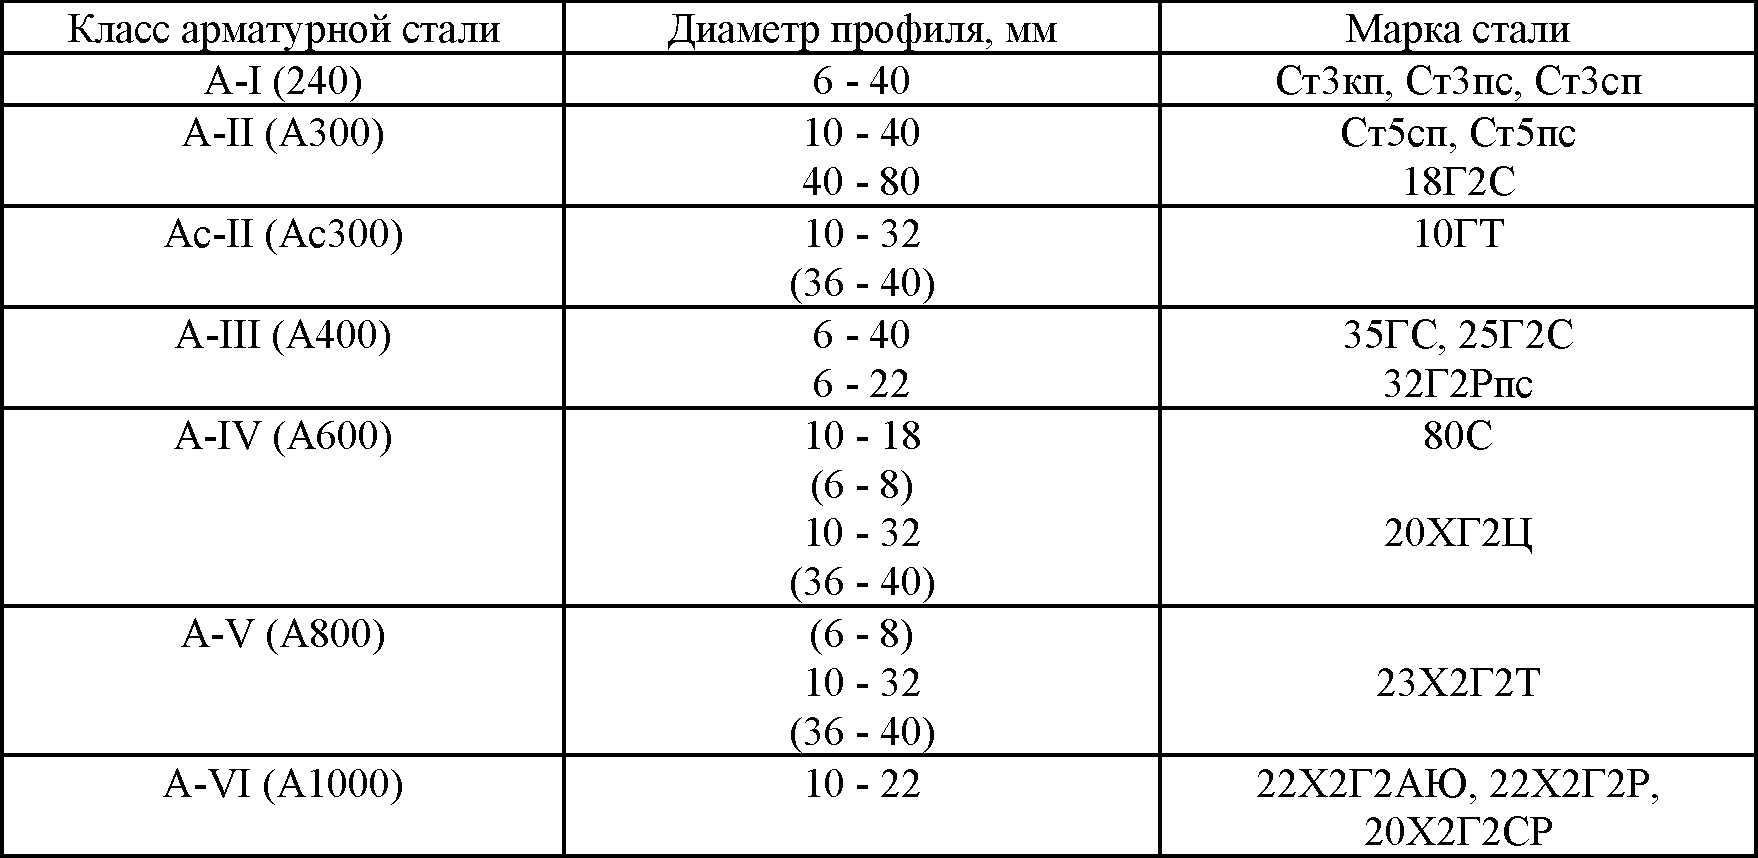 Вид и разновидности металлопроката » металлобазы.ру